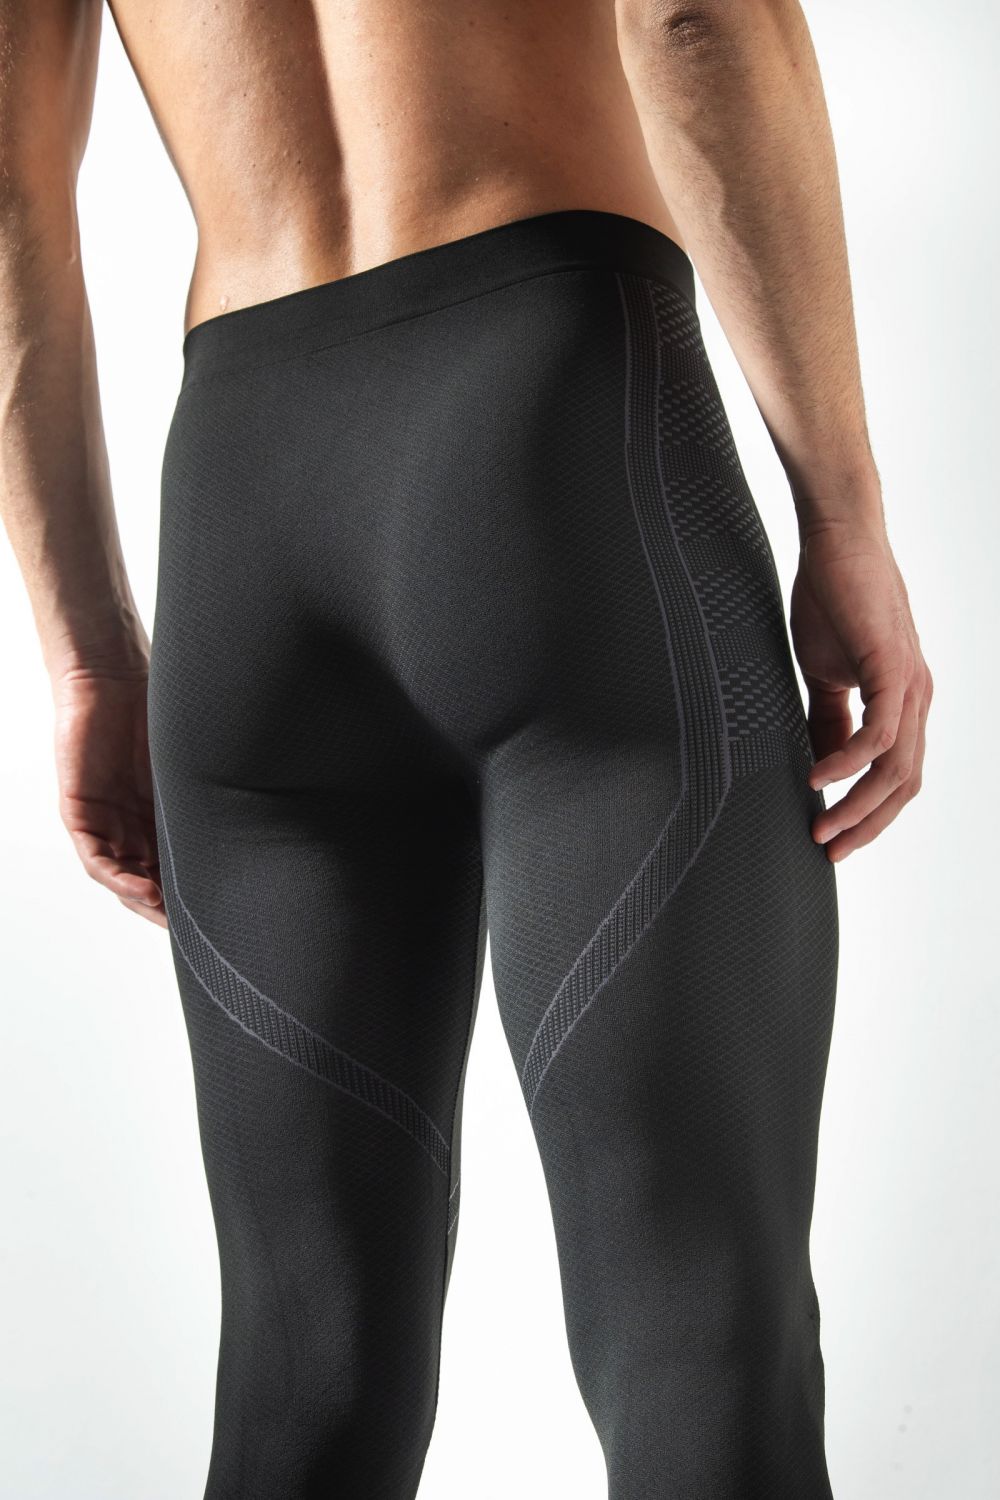 Pantalone Termico Uomo Leggings Energy, comfort e traspirabilità